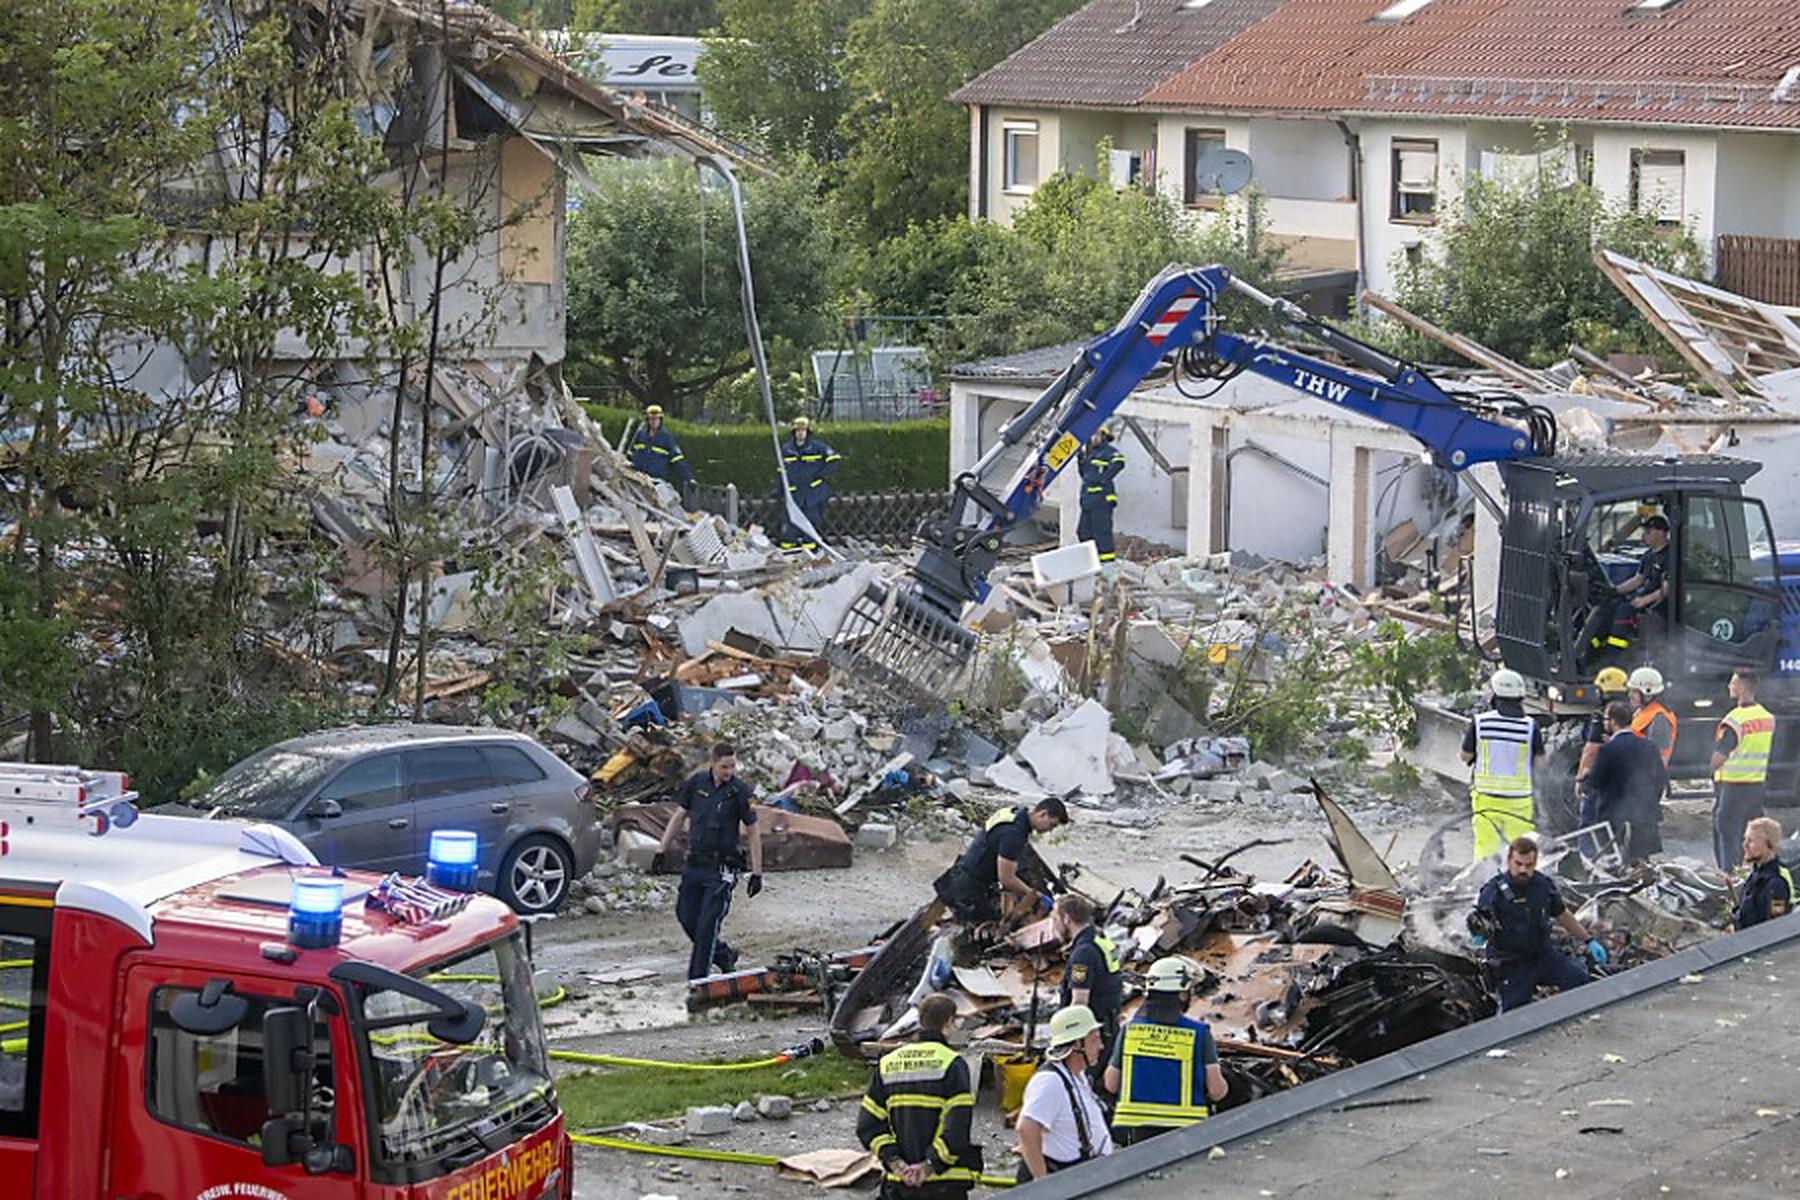 Memmingen: Millionenschaden nach Explosion in Reihenhaus in Bayern